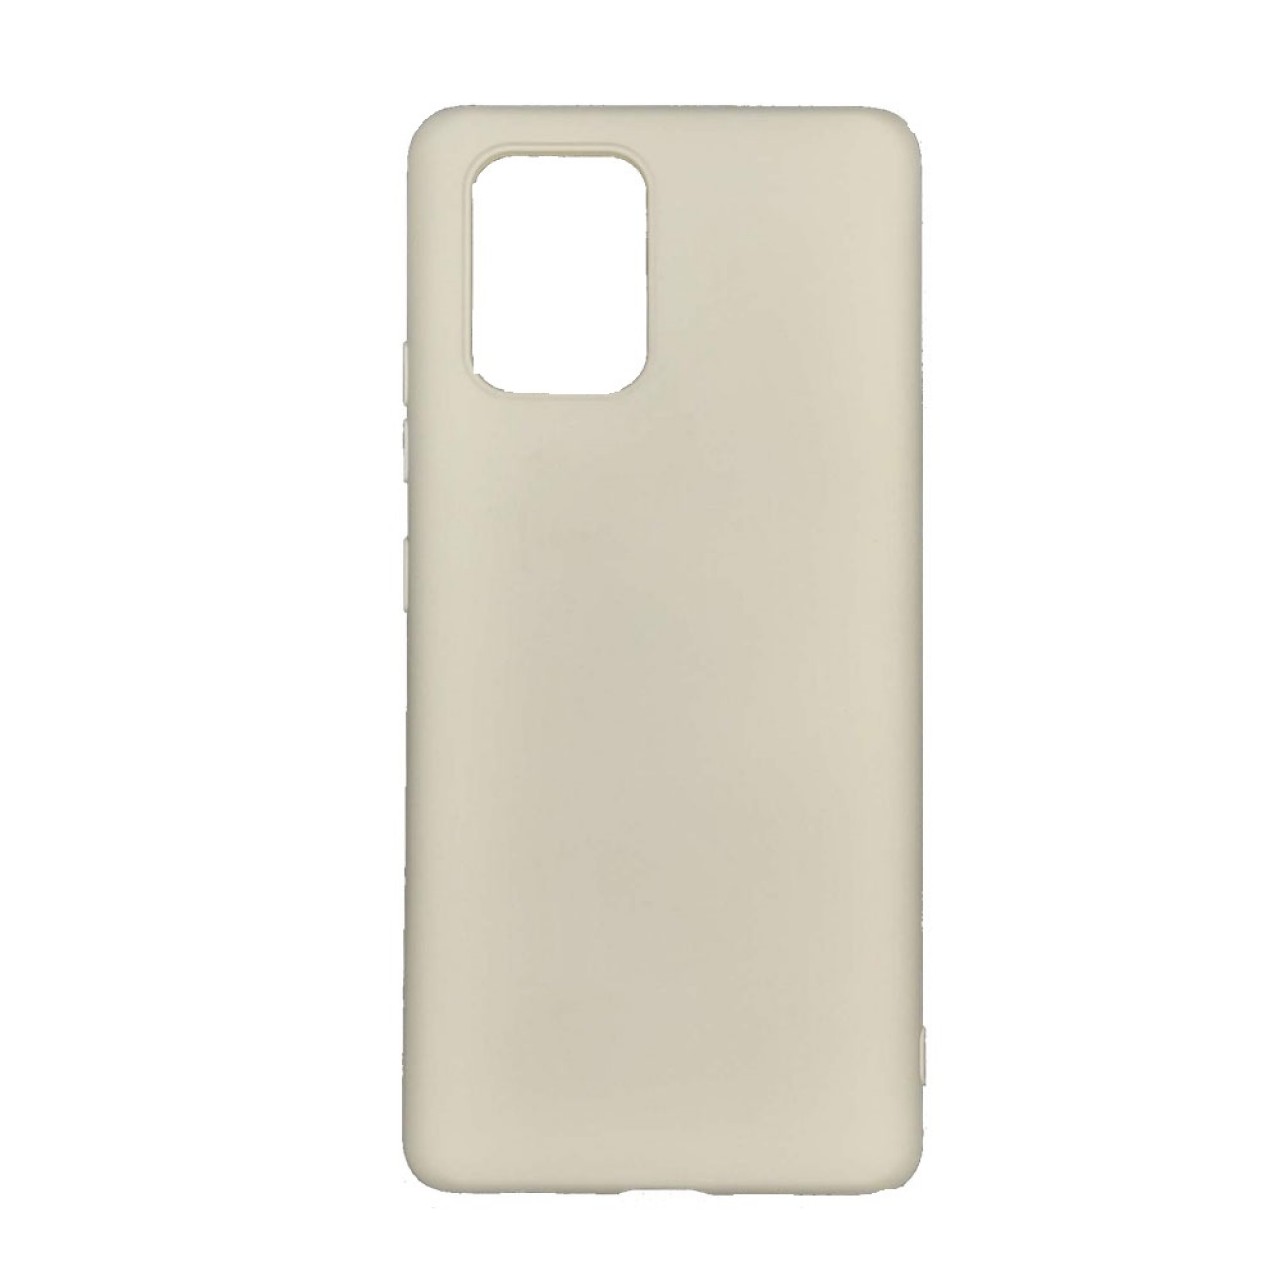 Θήκη Προστασίας Σιλικόνης Samsung Galaxy S10 Lite - Back Cover Silicone Case Oem - Cream